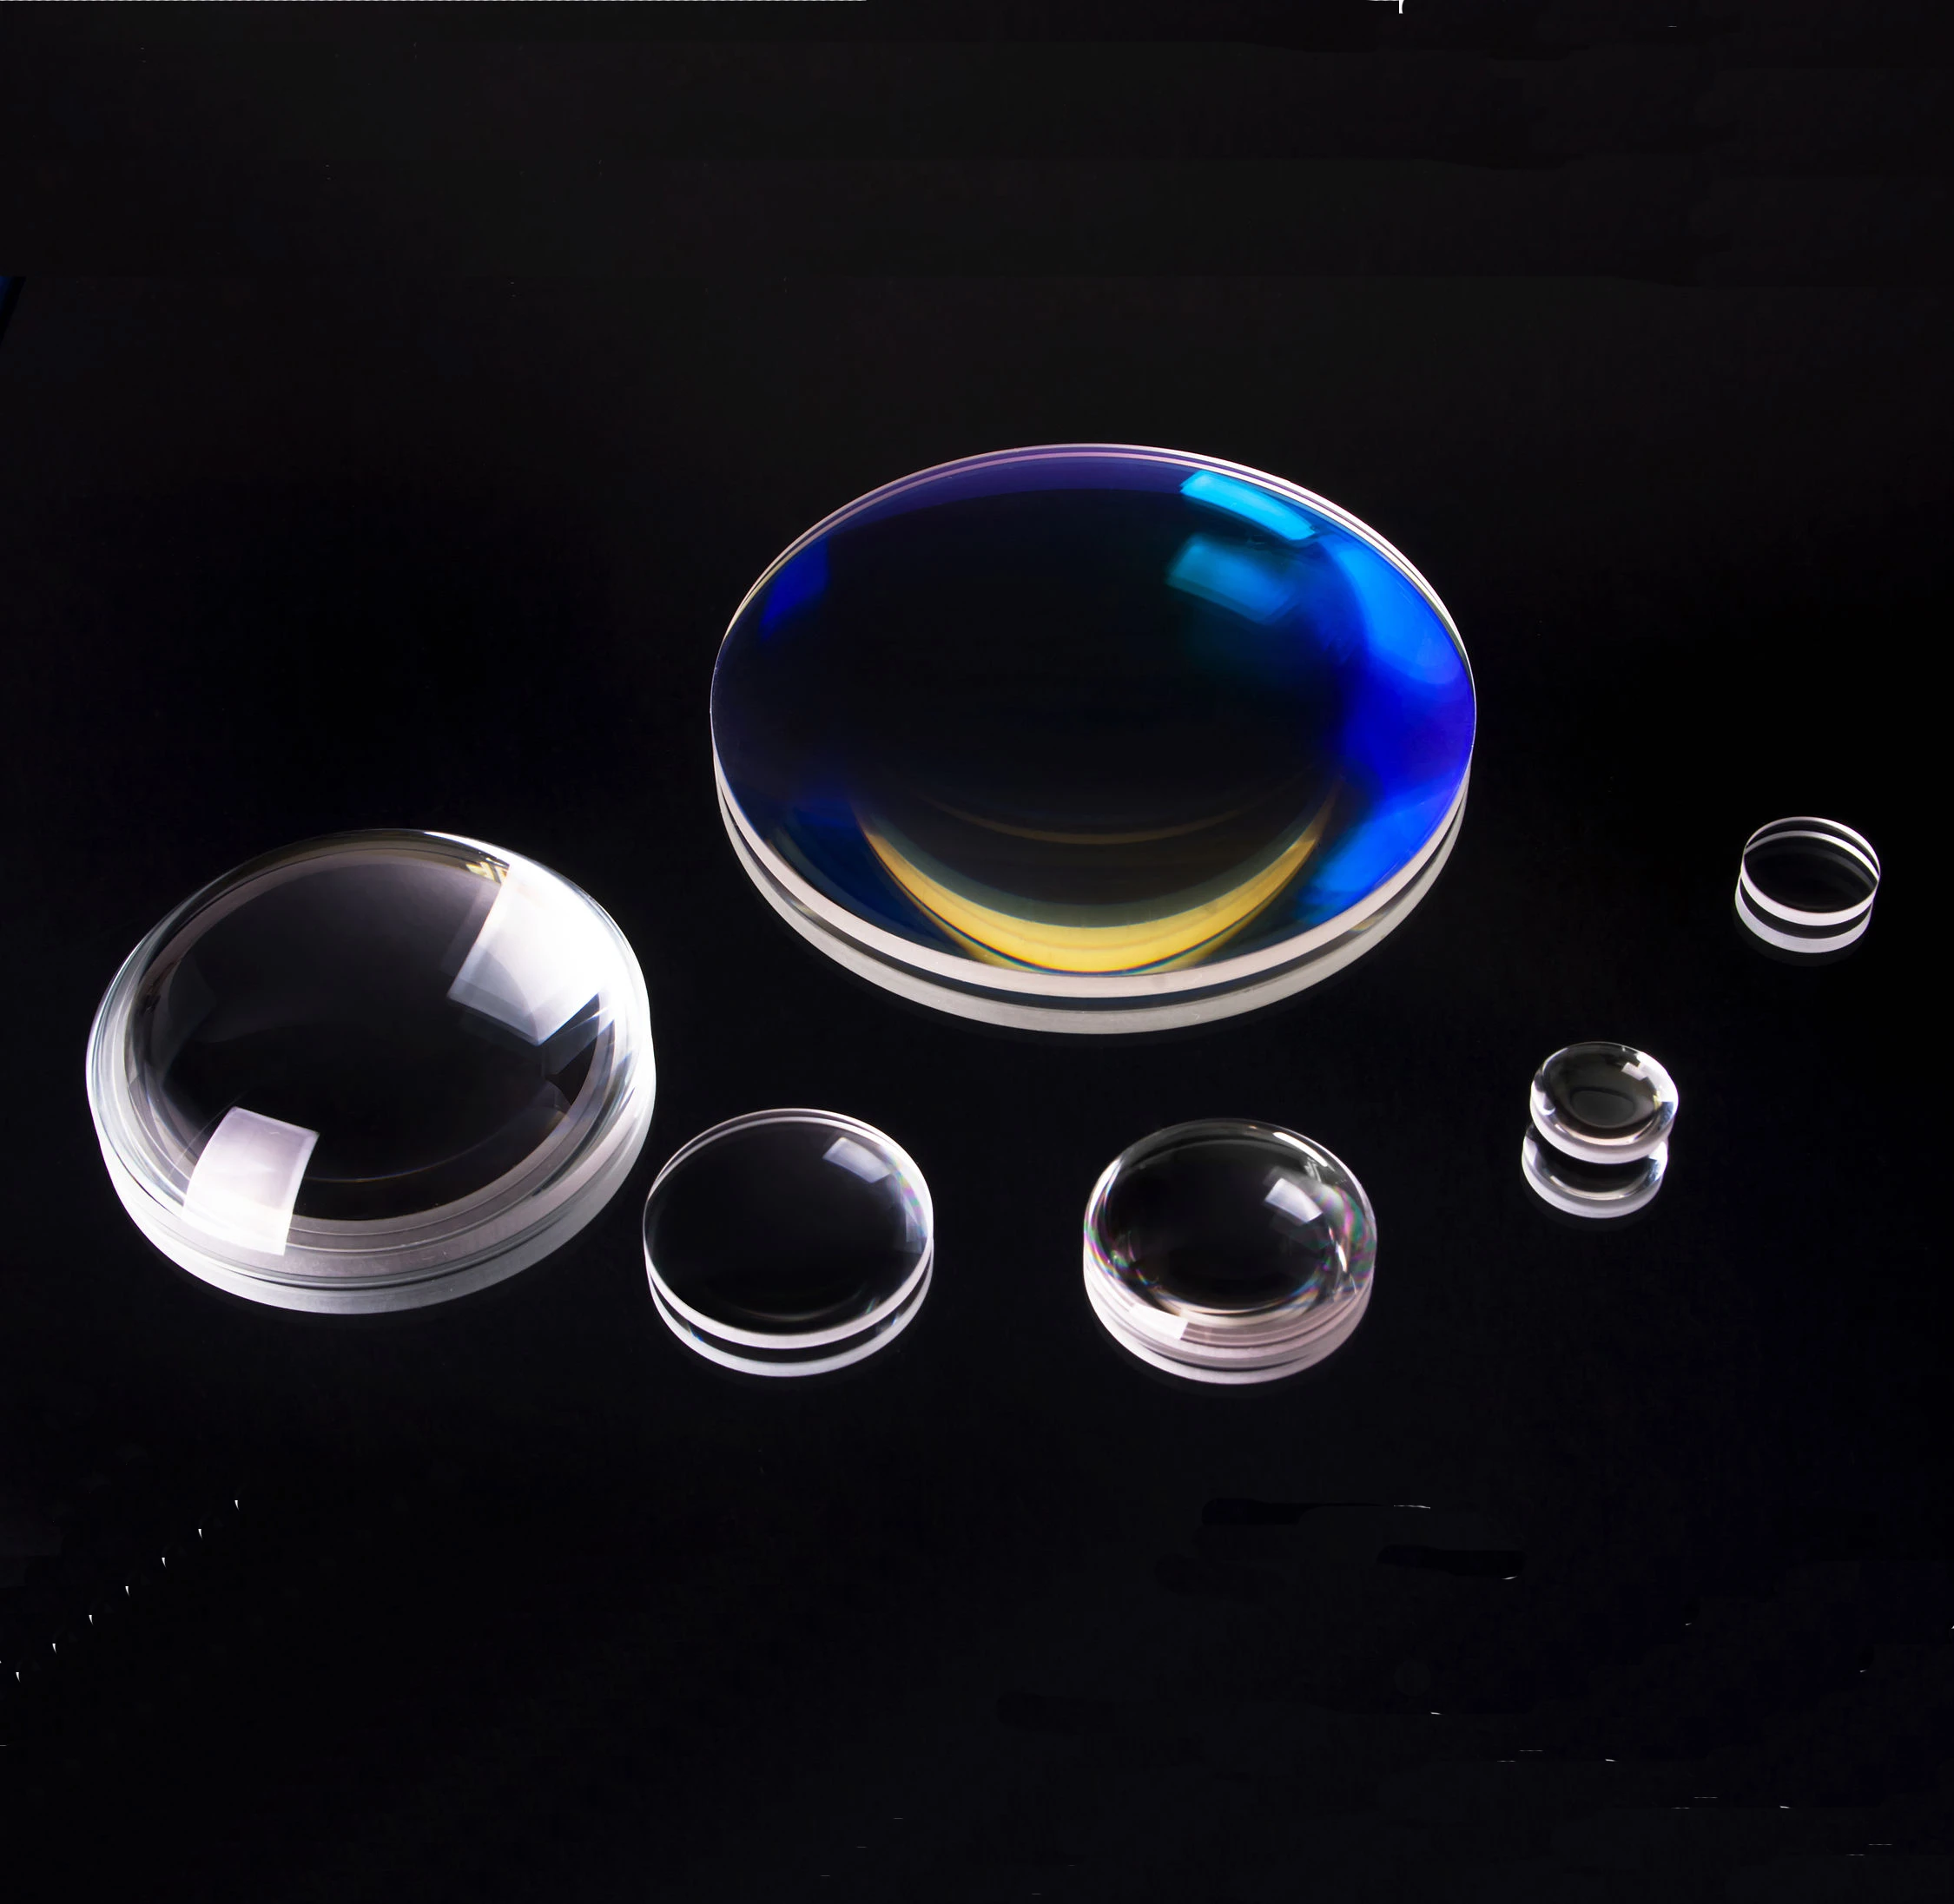 Optical glass lenses